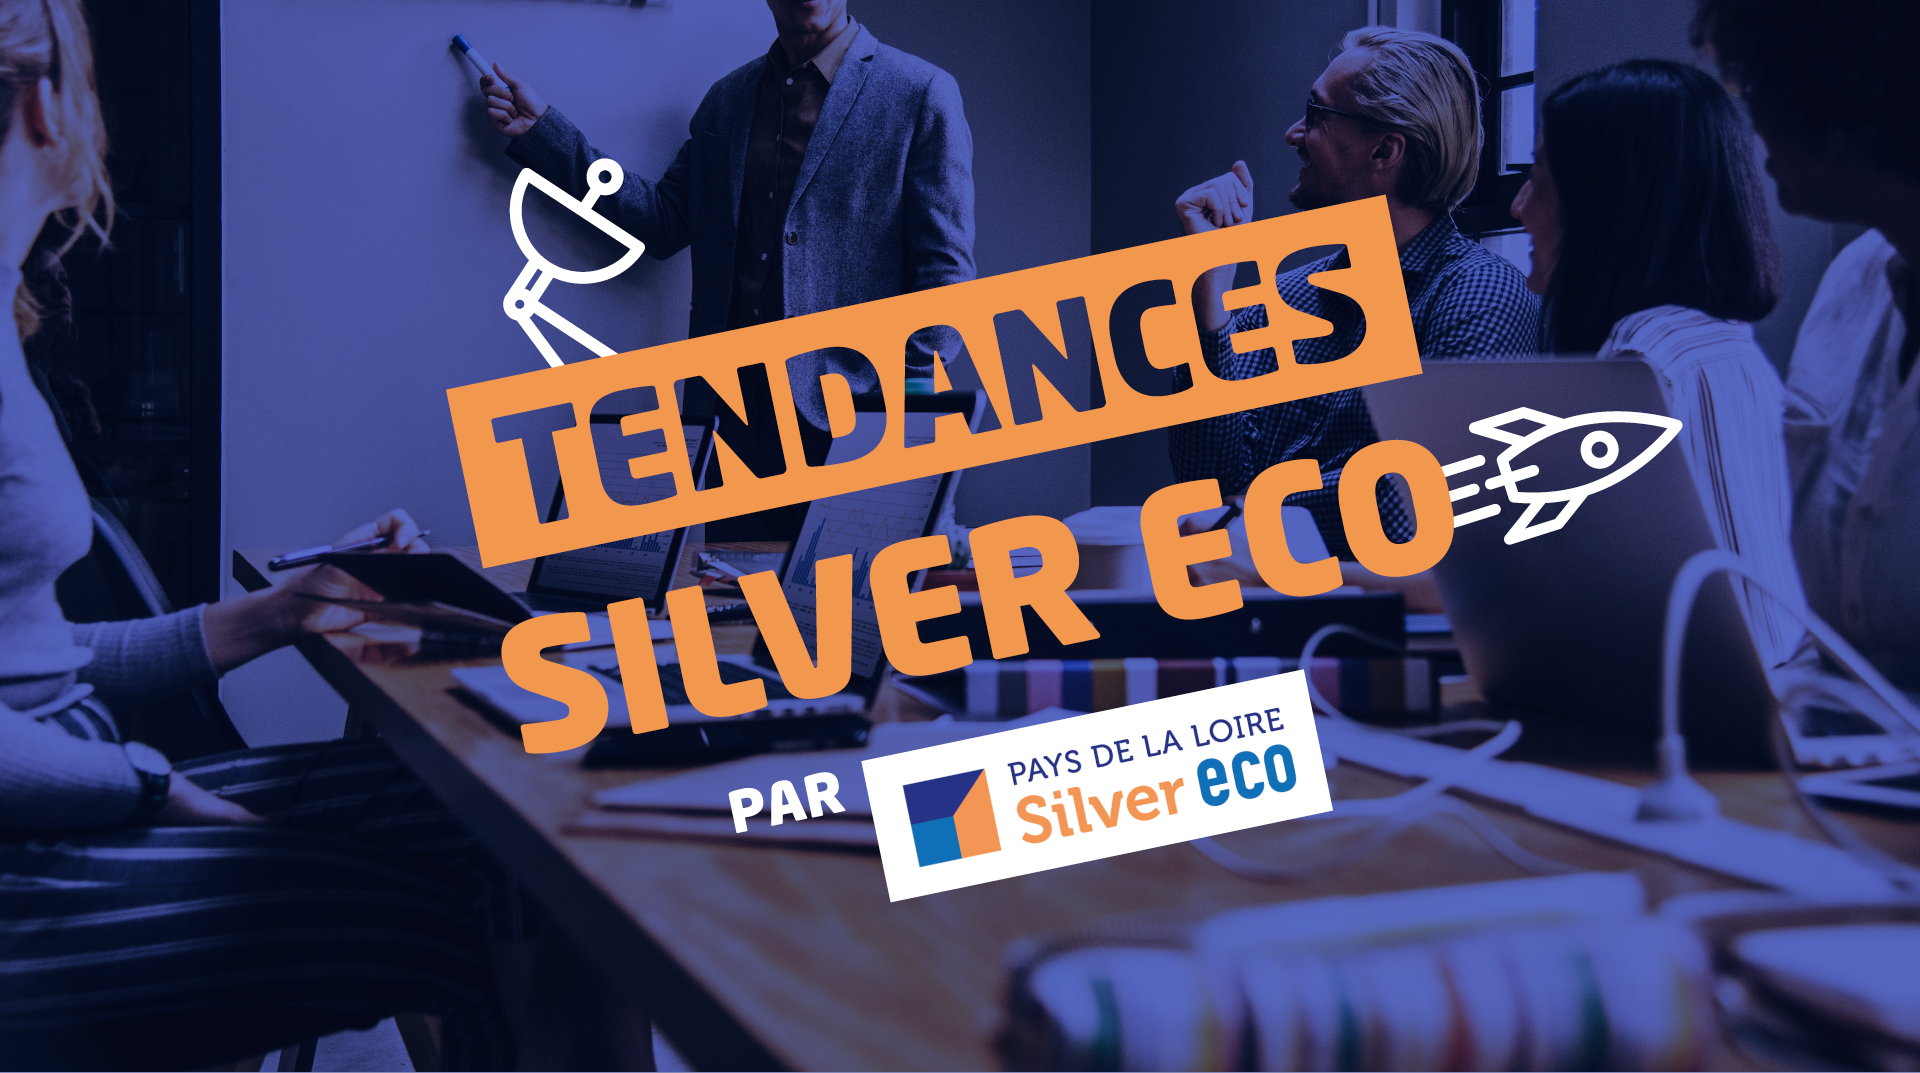 Tendances Silver Eco